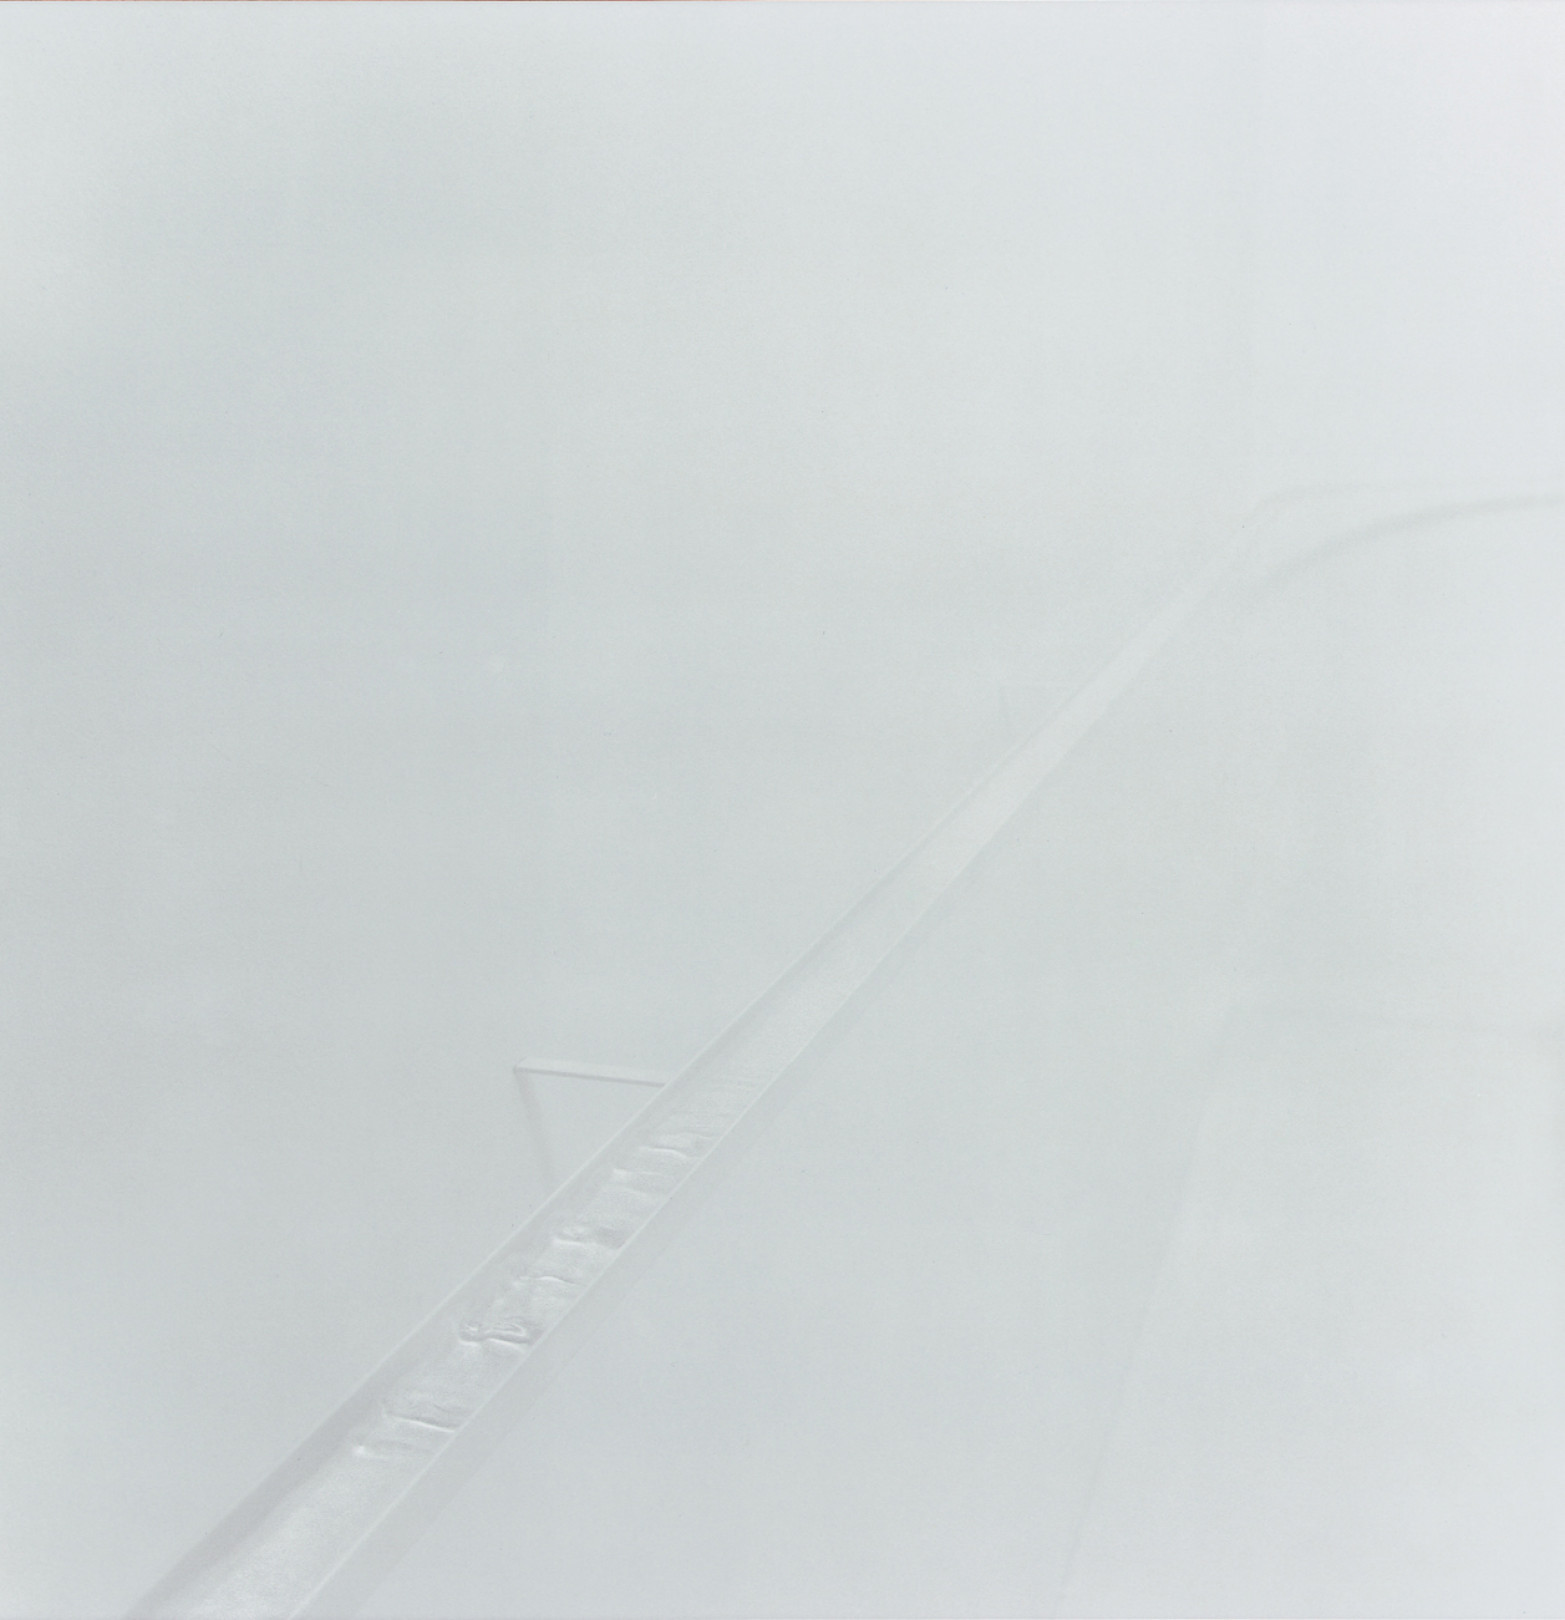 タマ／アニマ（わたしに息を吹きかけてください） 2005年 アサヒビール大山崎山荘美術館、京都 撮影：森川昇 / 内藤礼